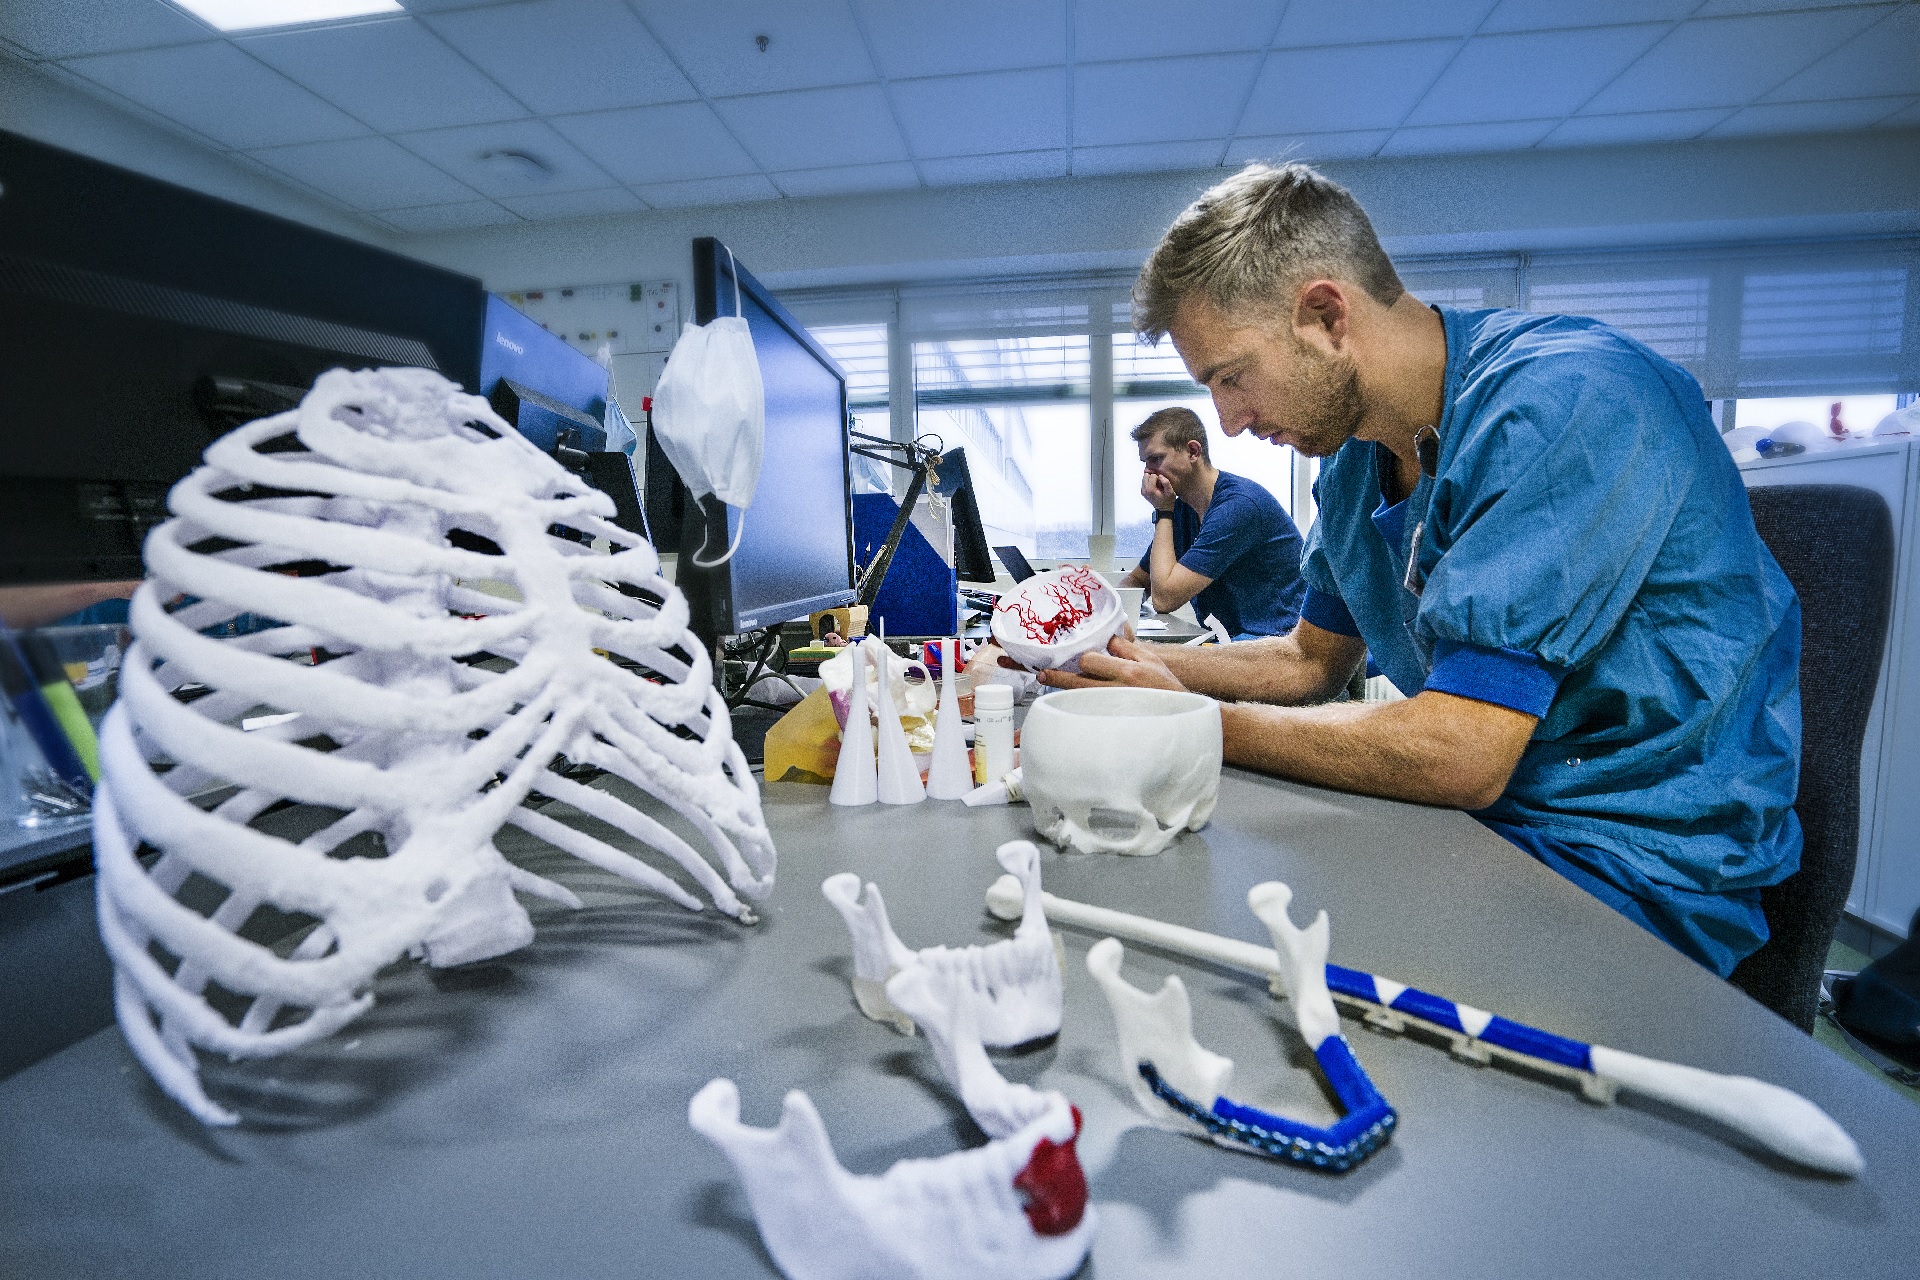 æggelederne leksikon spild væk 3D-print skal forbedre kræftbehandling - Teknologisk Institut